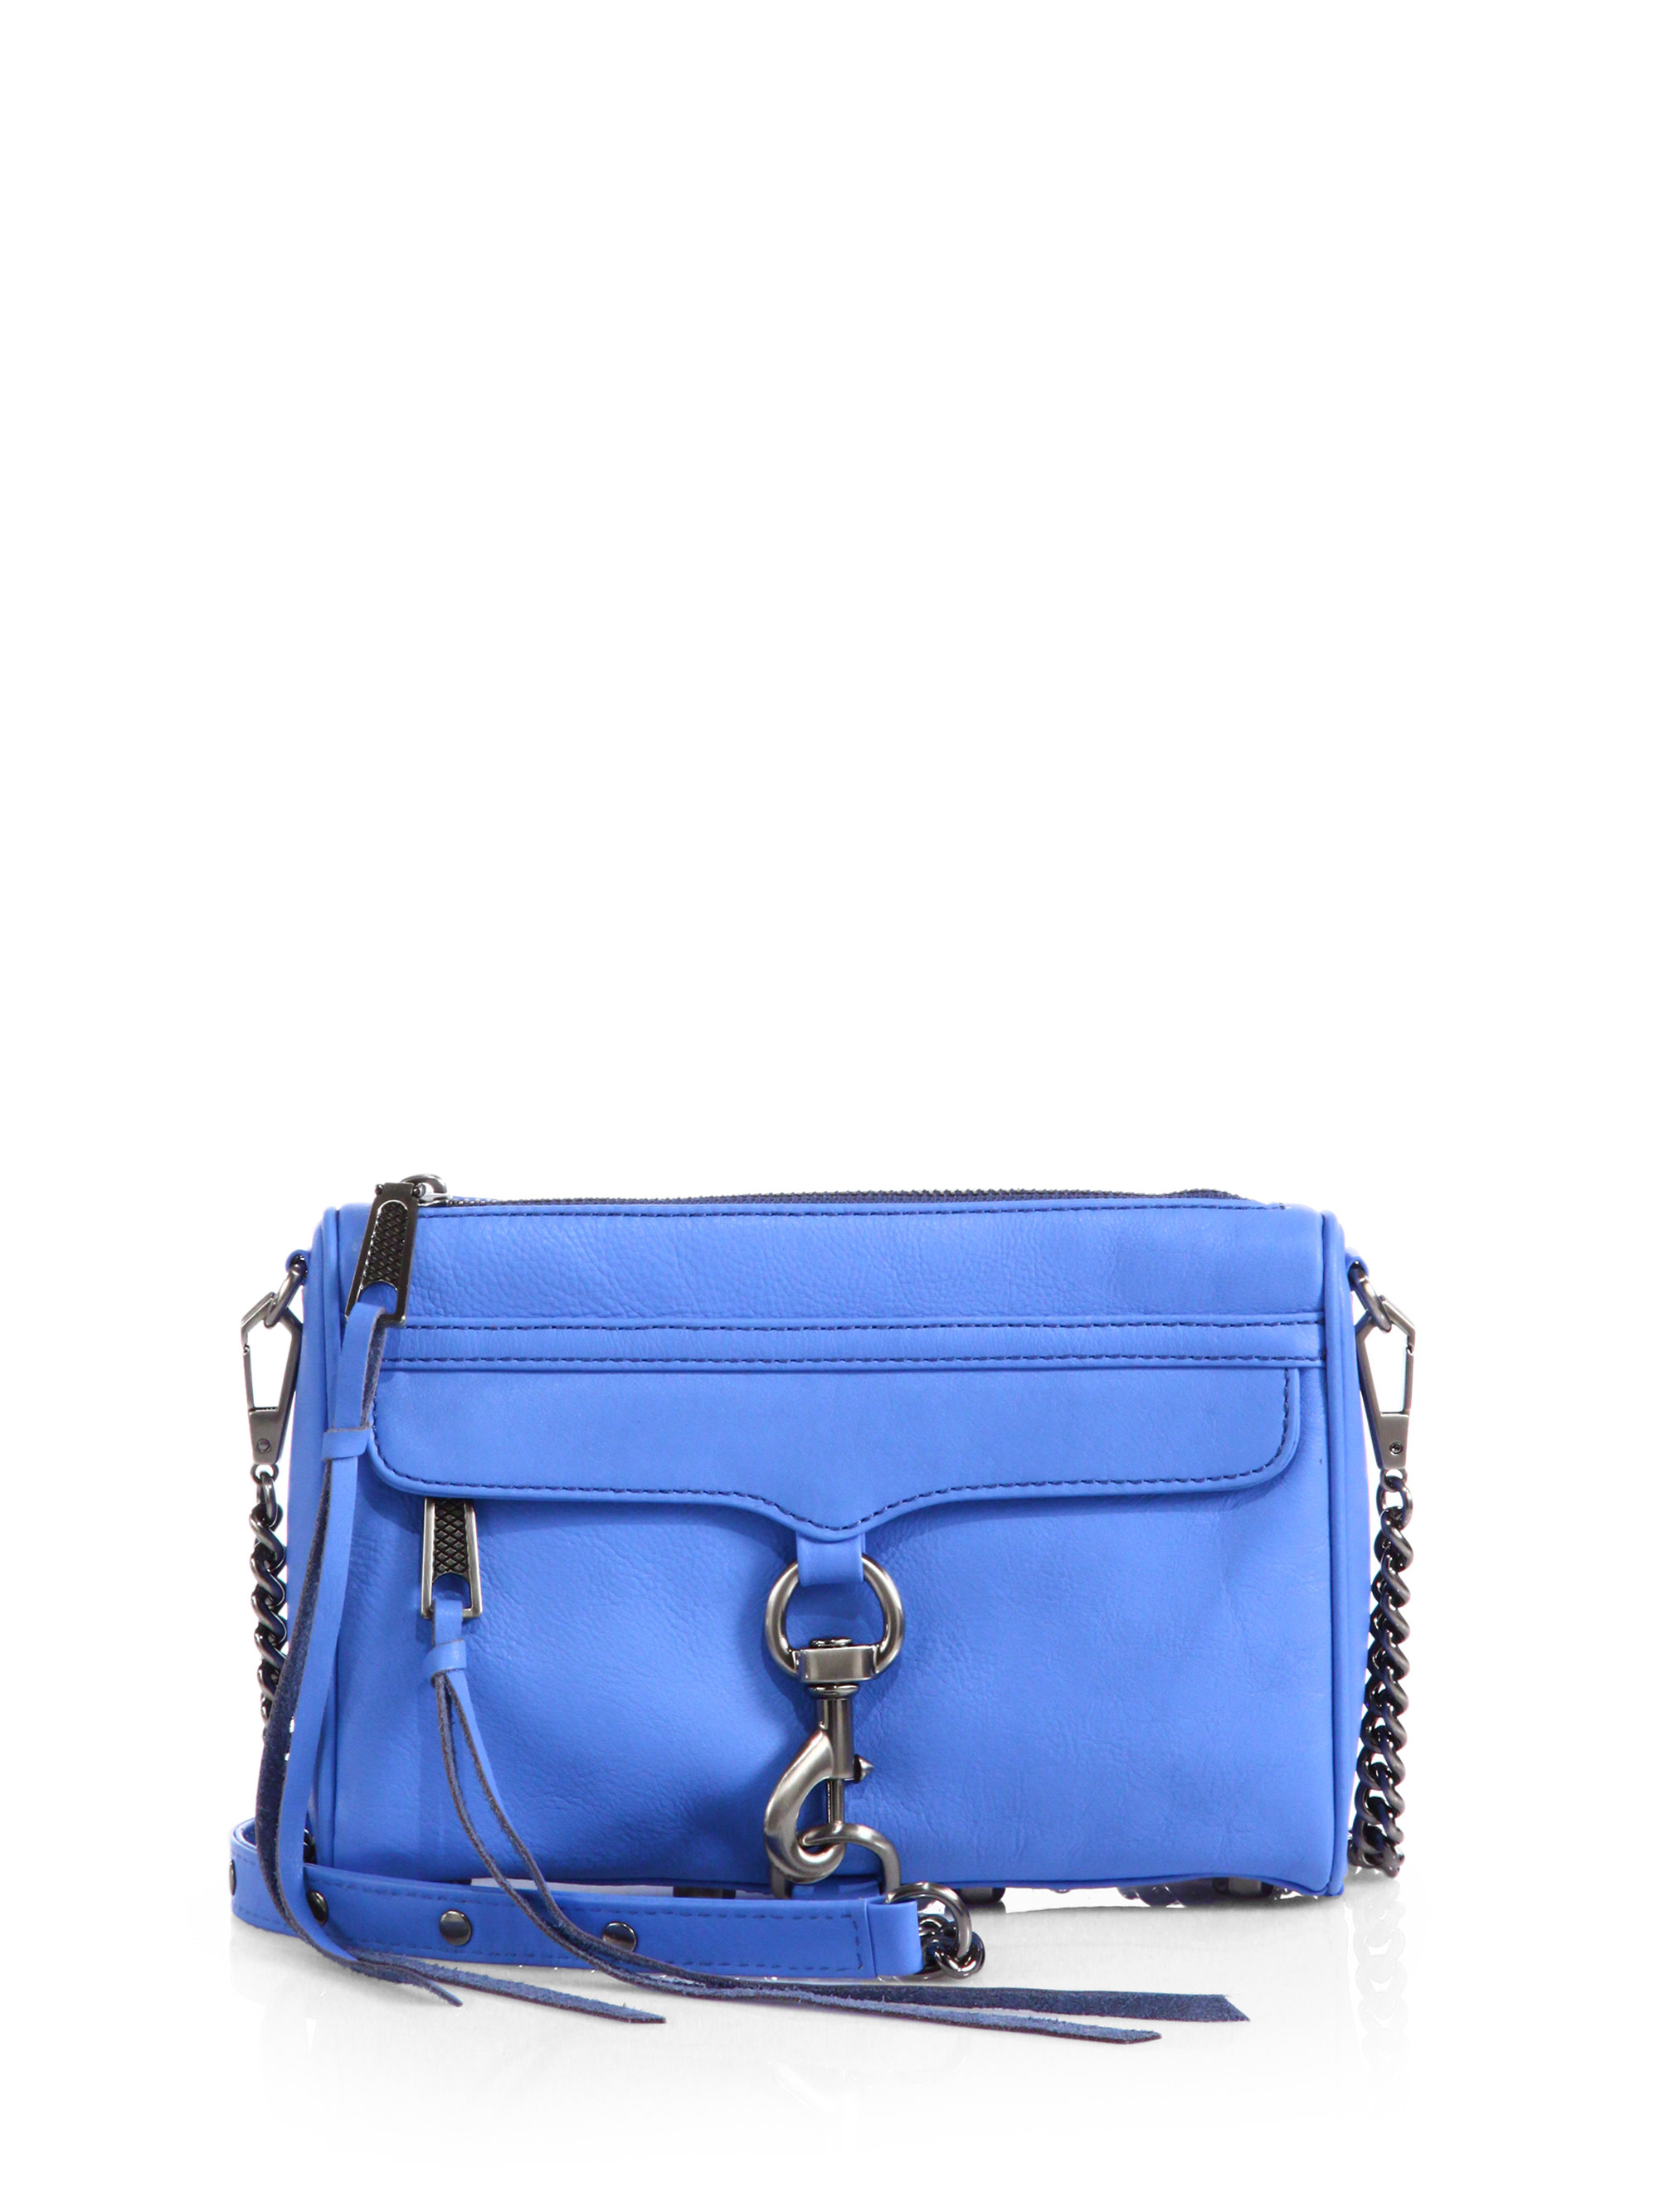 Rebecca Minkoff Mini Mac Crossbody Bag in Blue (TWILIGHT BLUE) | Lyst